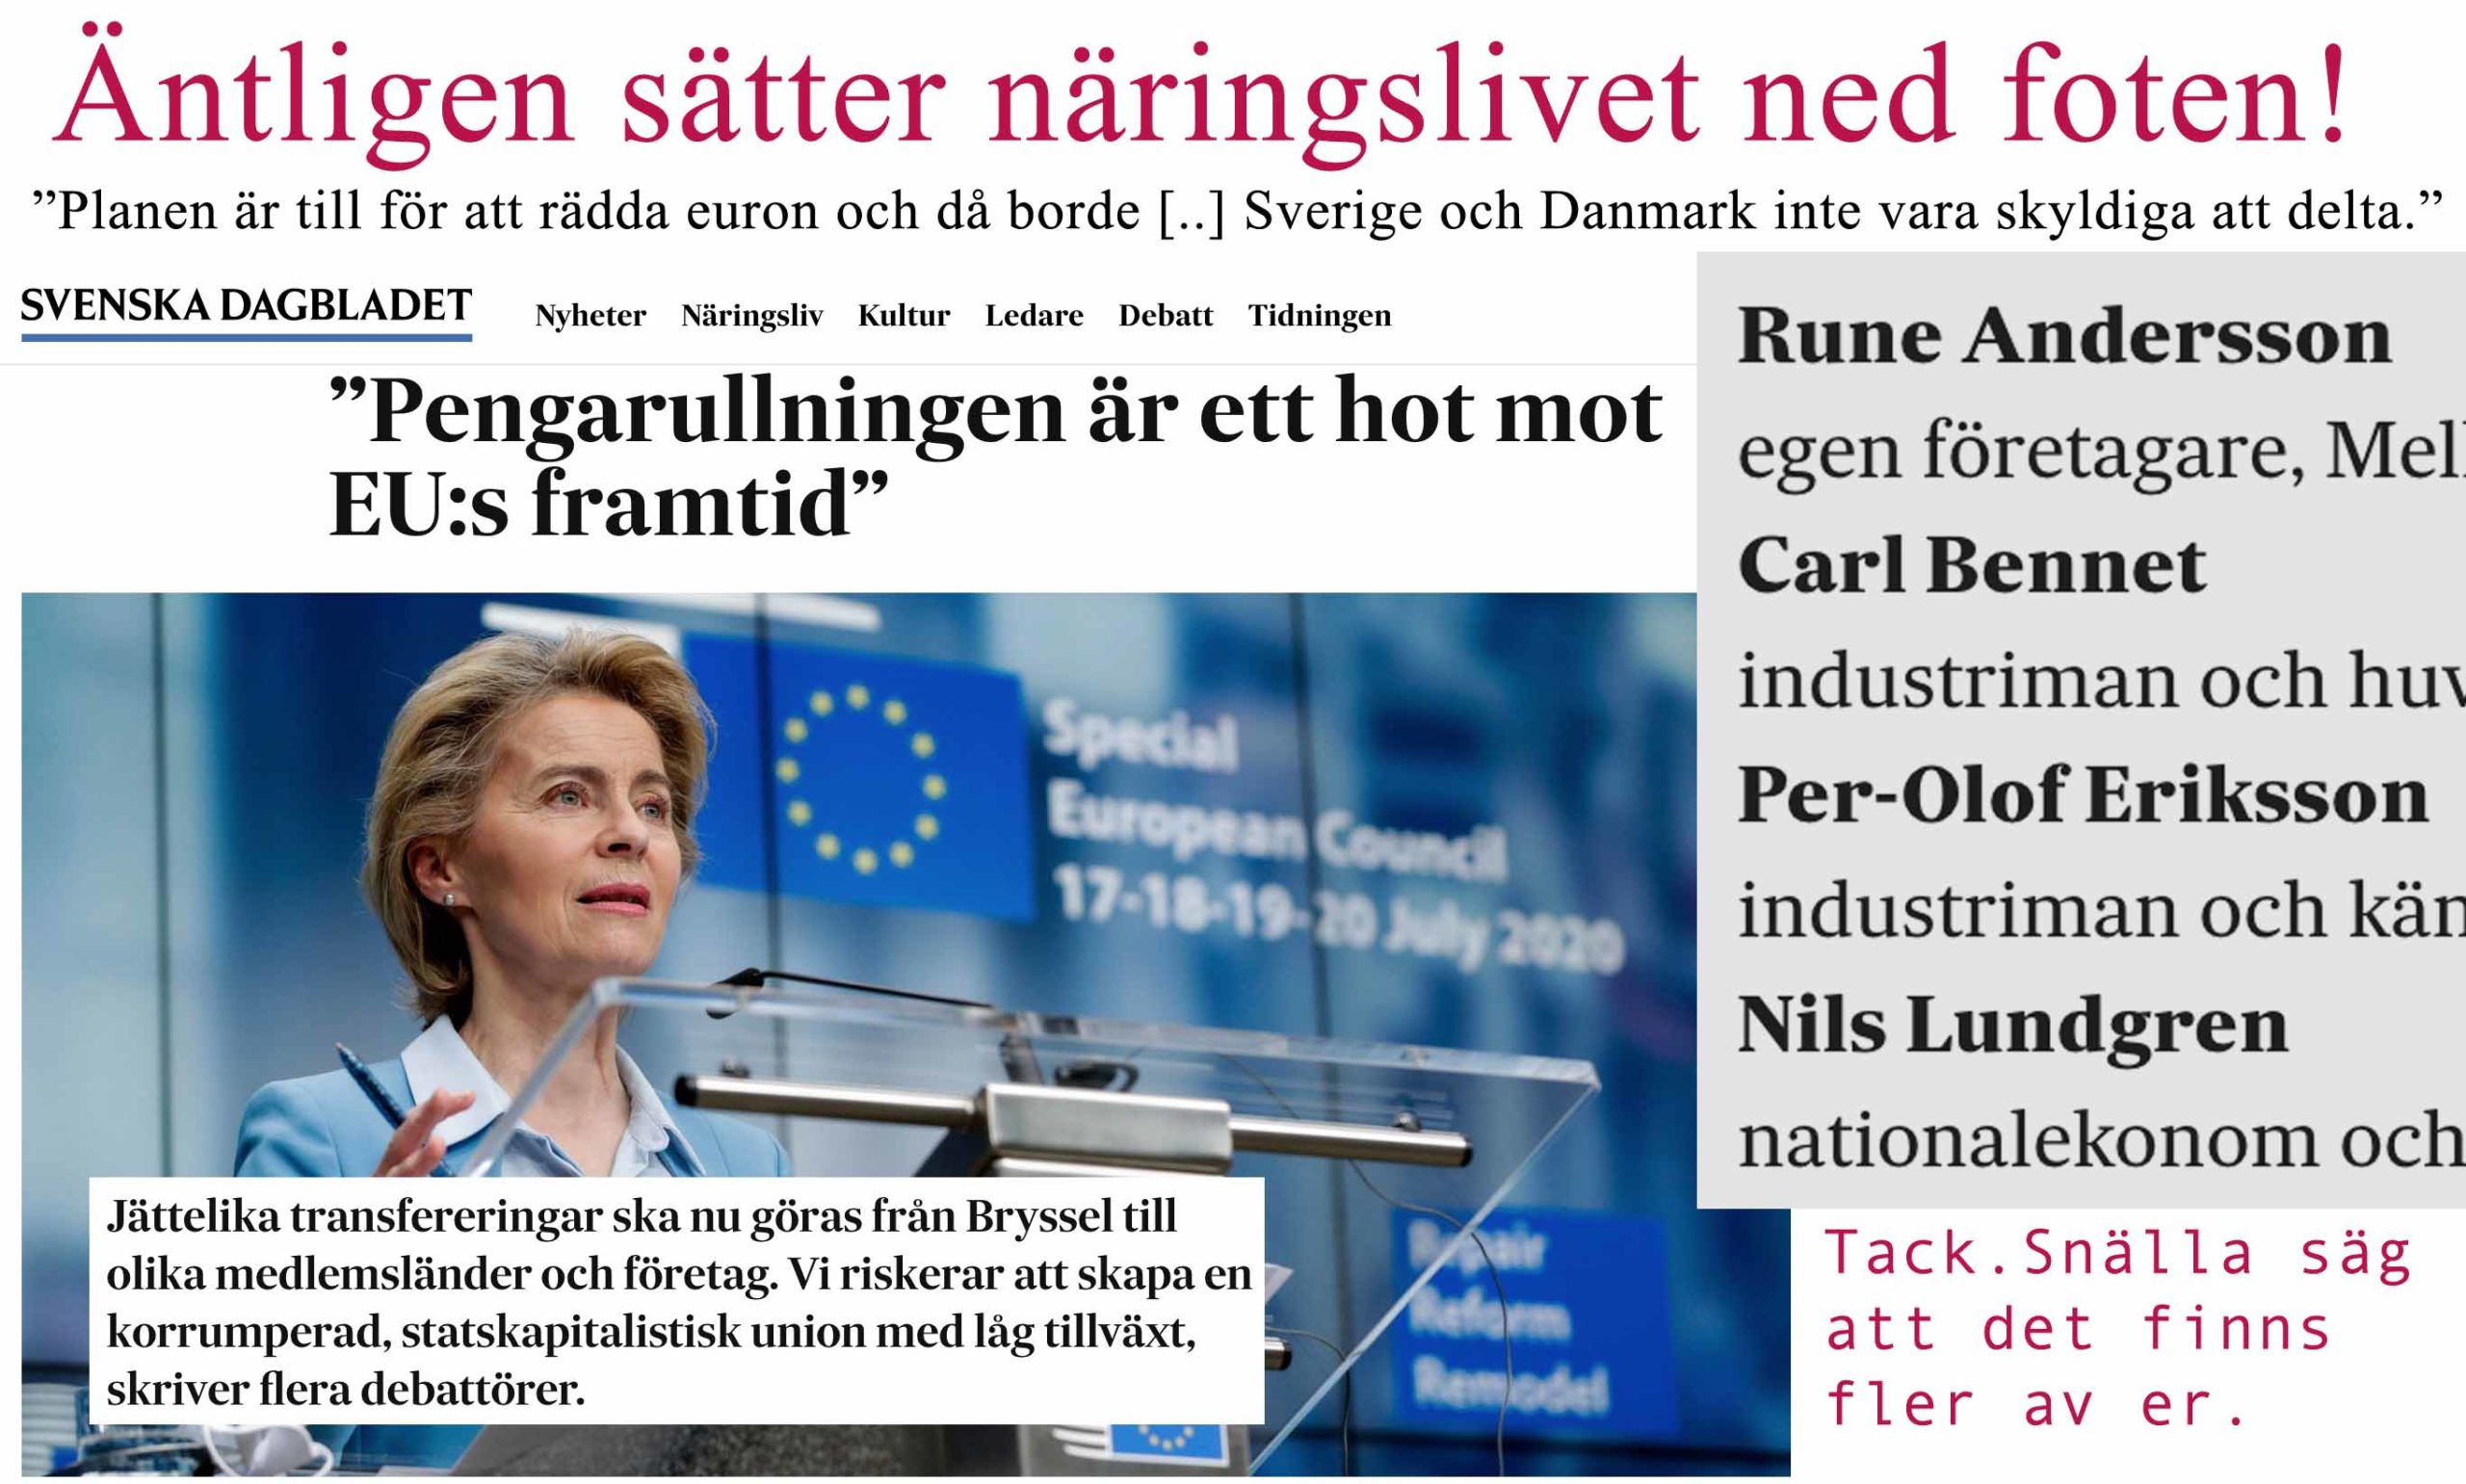 Tunga näringslivsföreträdare undrar varför Sverige ska behöva hjälpa till att rädda euron. Det borde även Löfven ha frågat sig.